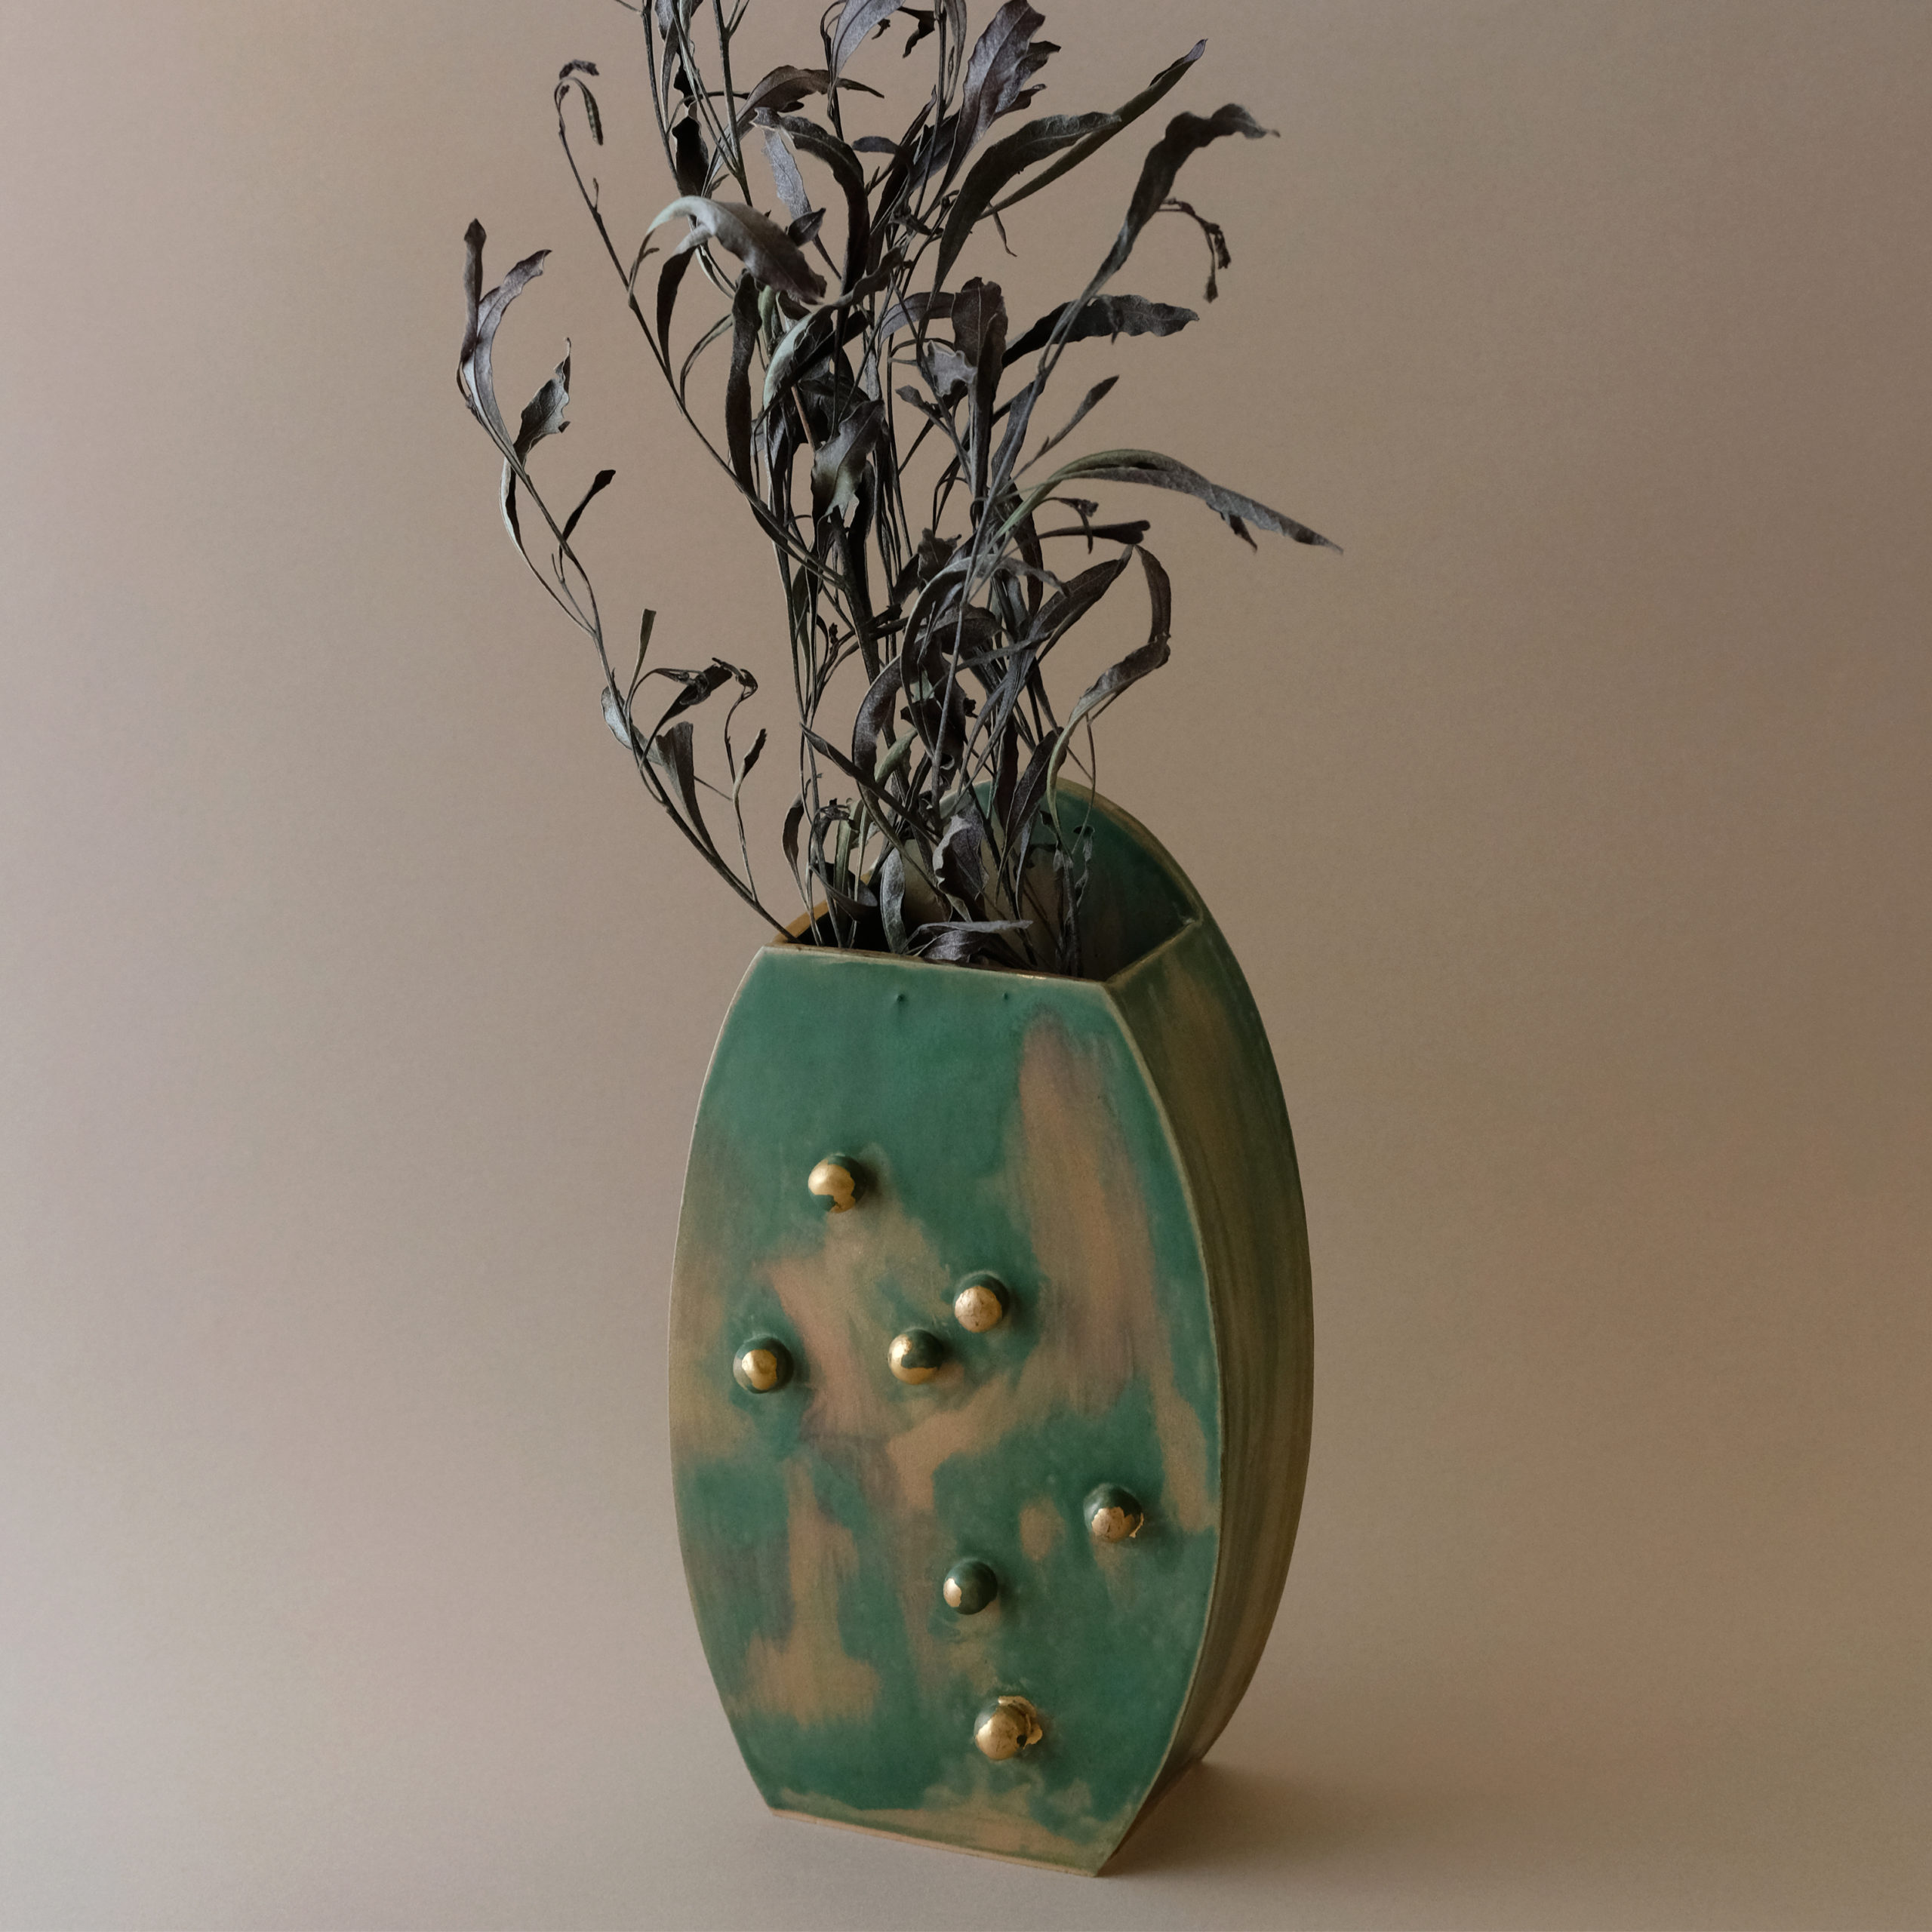 yoshirotten 花瓶　flower vase素材は金属です